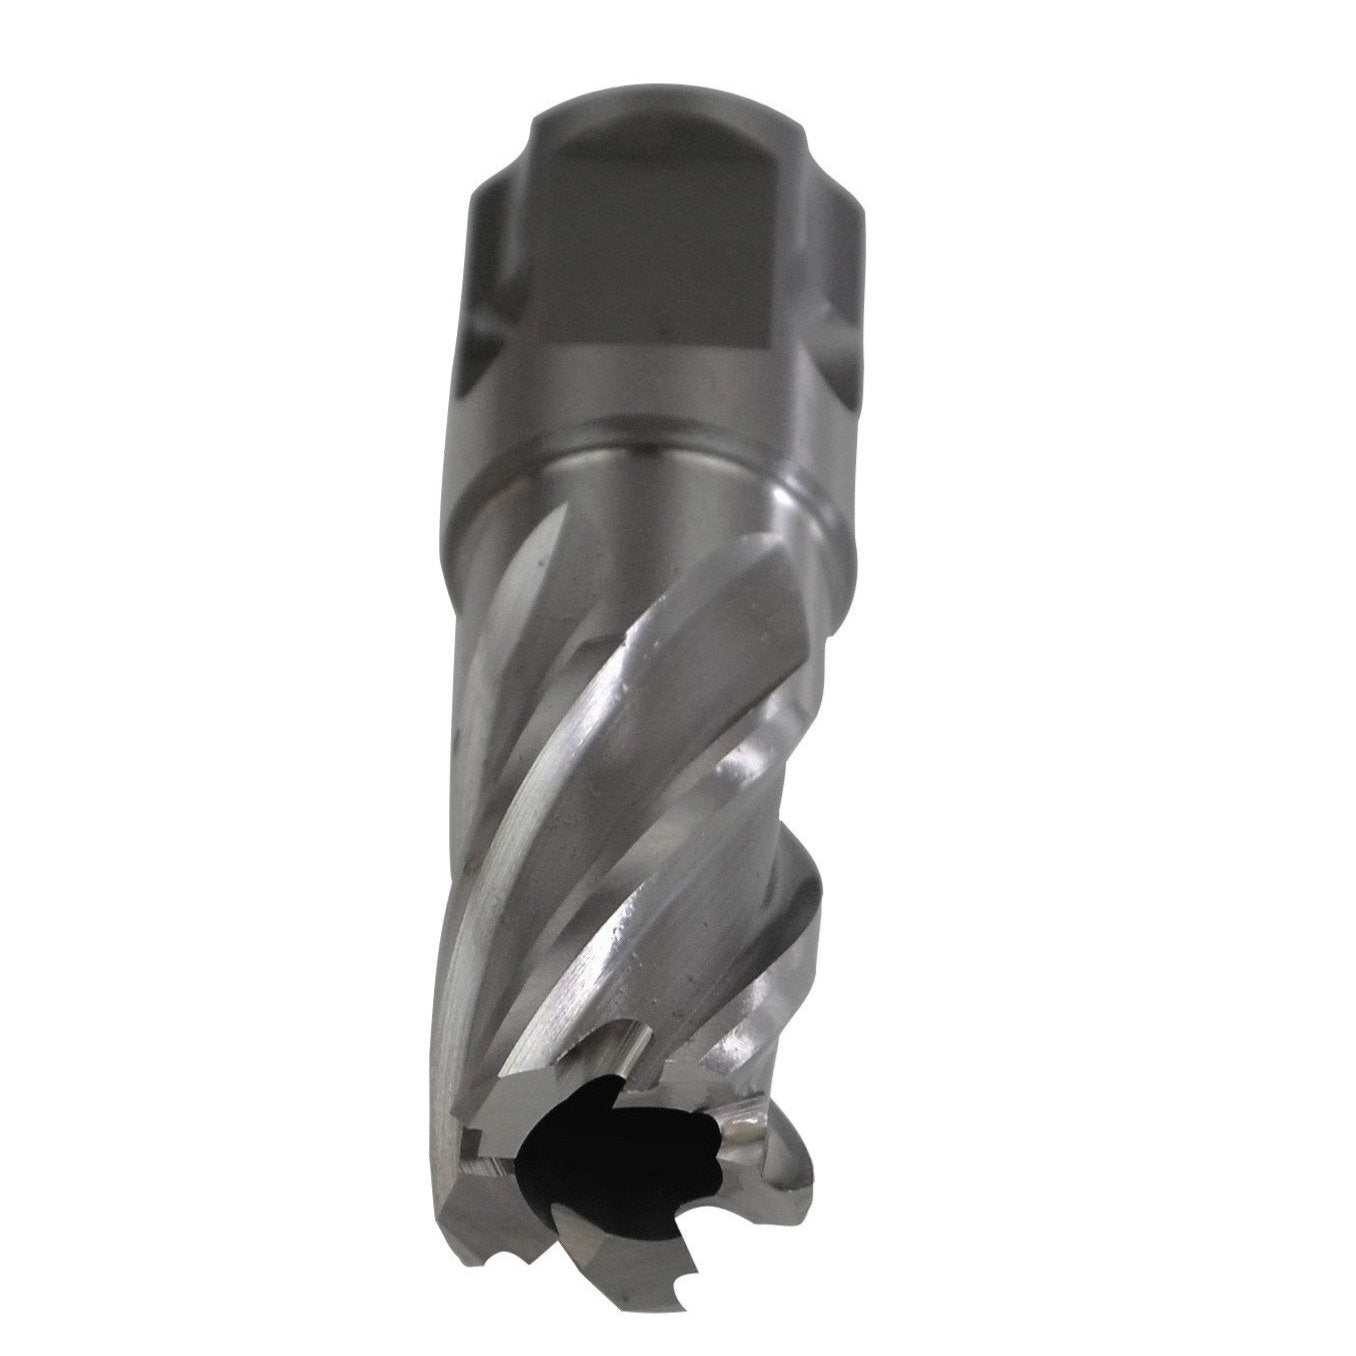 annular cutter HSS 17x25mm broach cutter universal shank rotoabroach magnetic drill CNC metalwork supplies